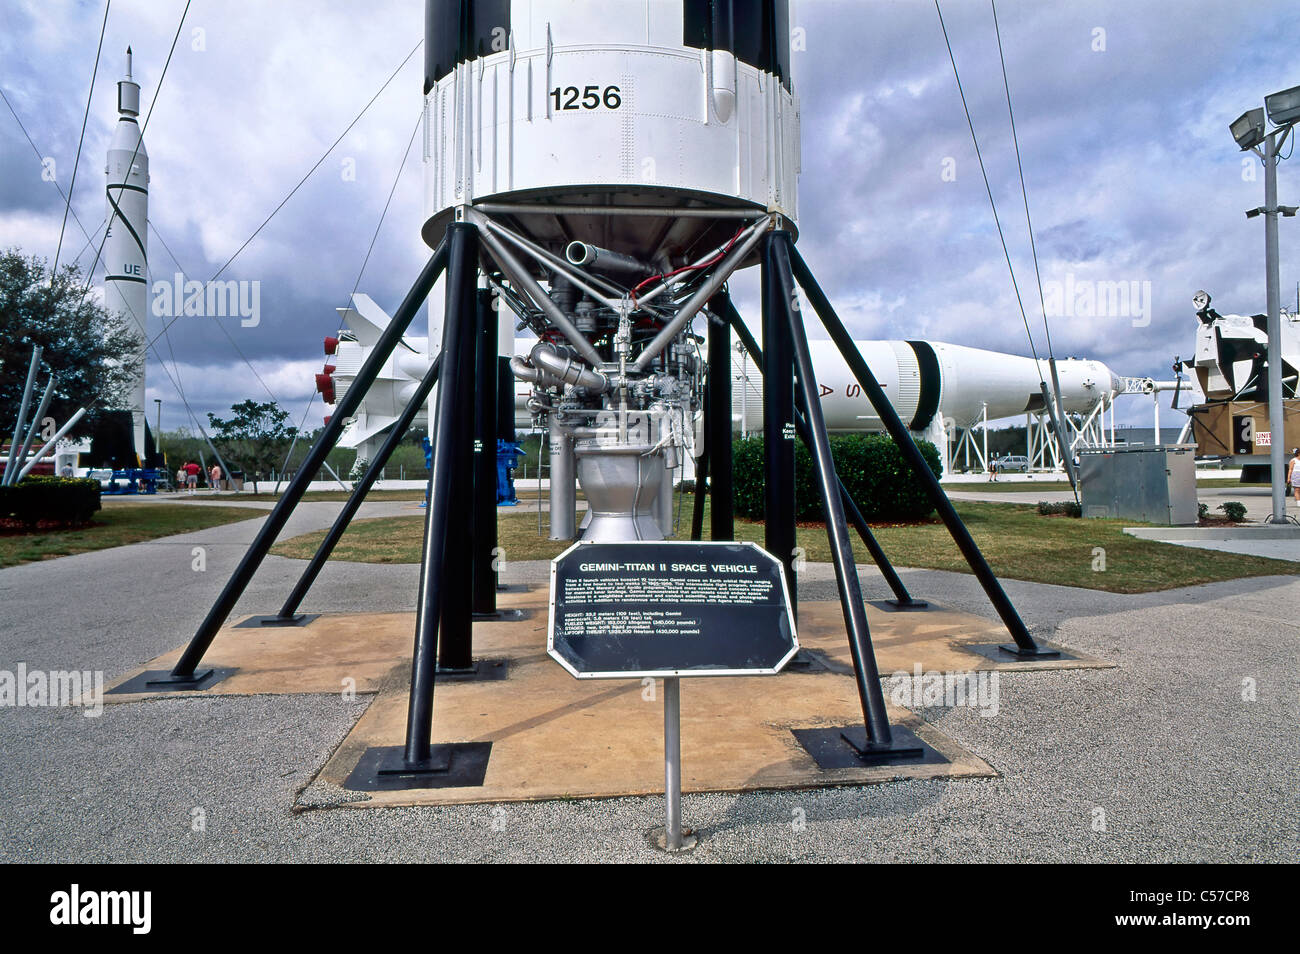 Kennedy Space Center Cape Canaveral Florida États-Unis. Véhicule spatial Gemini-Titan II. c. 1997. Banque D'Images